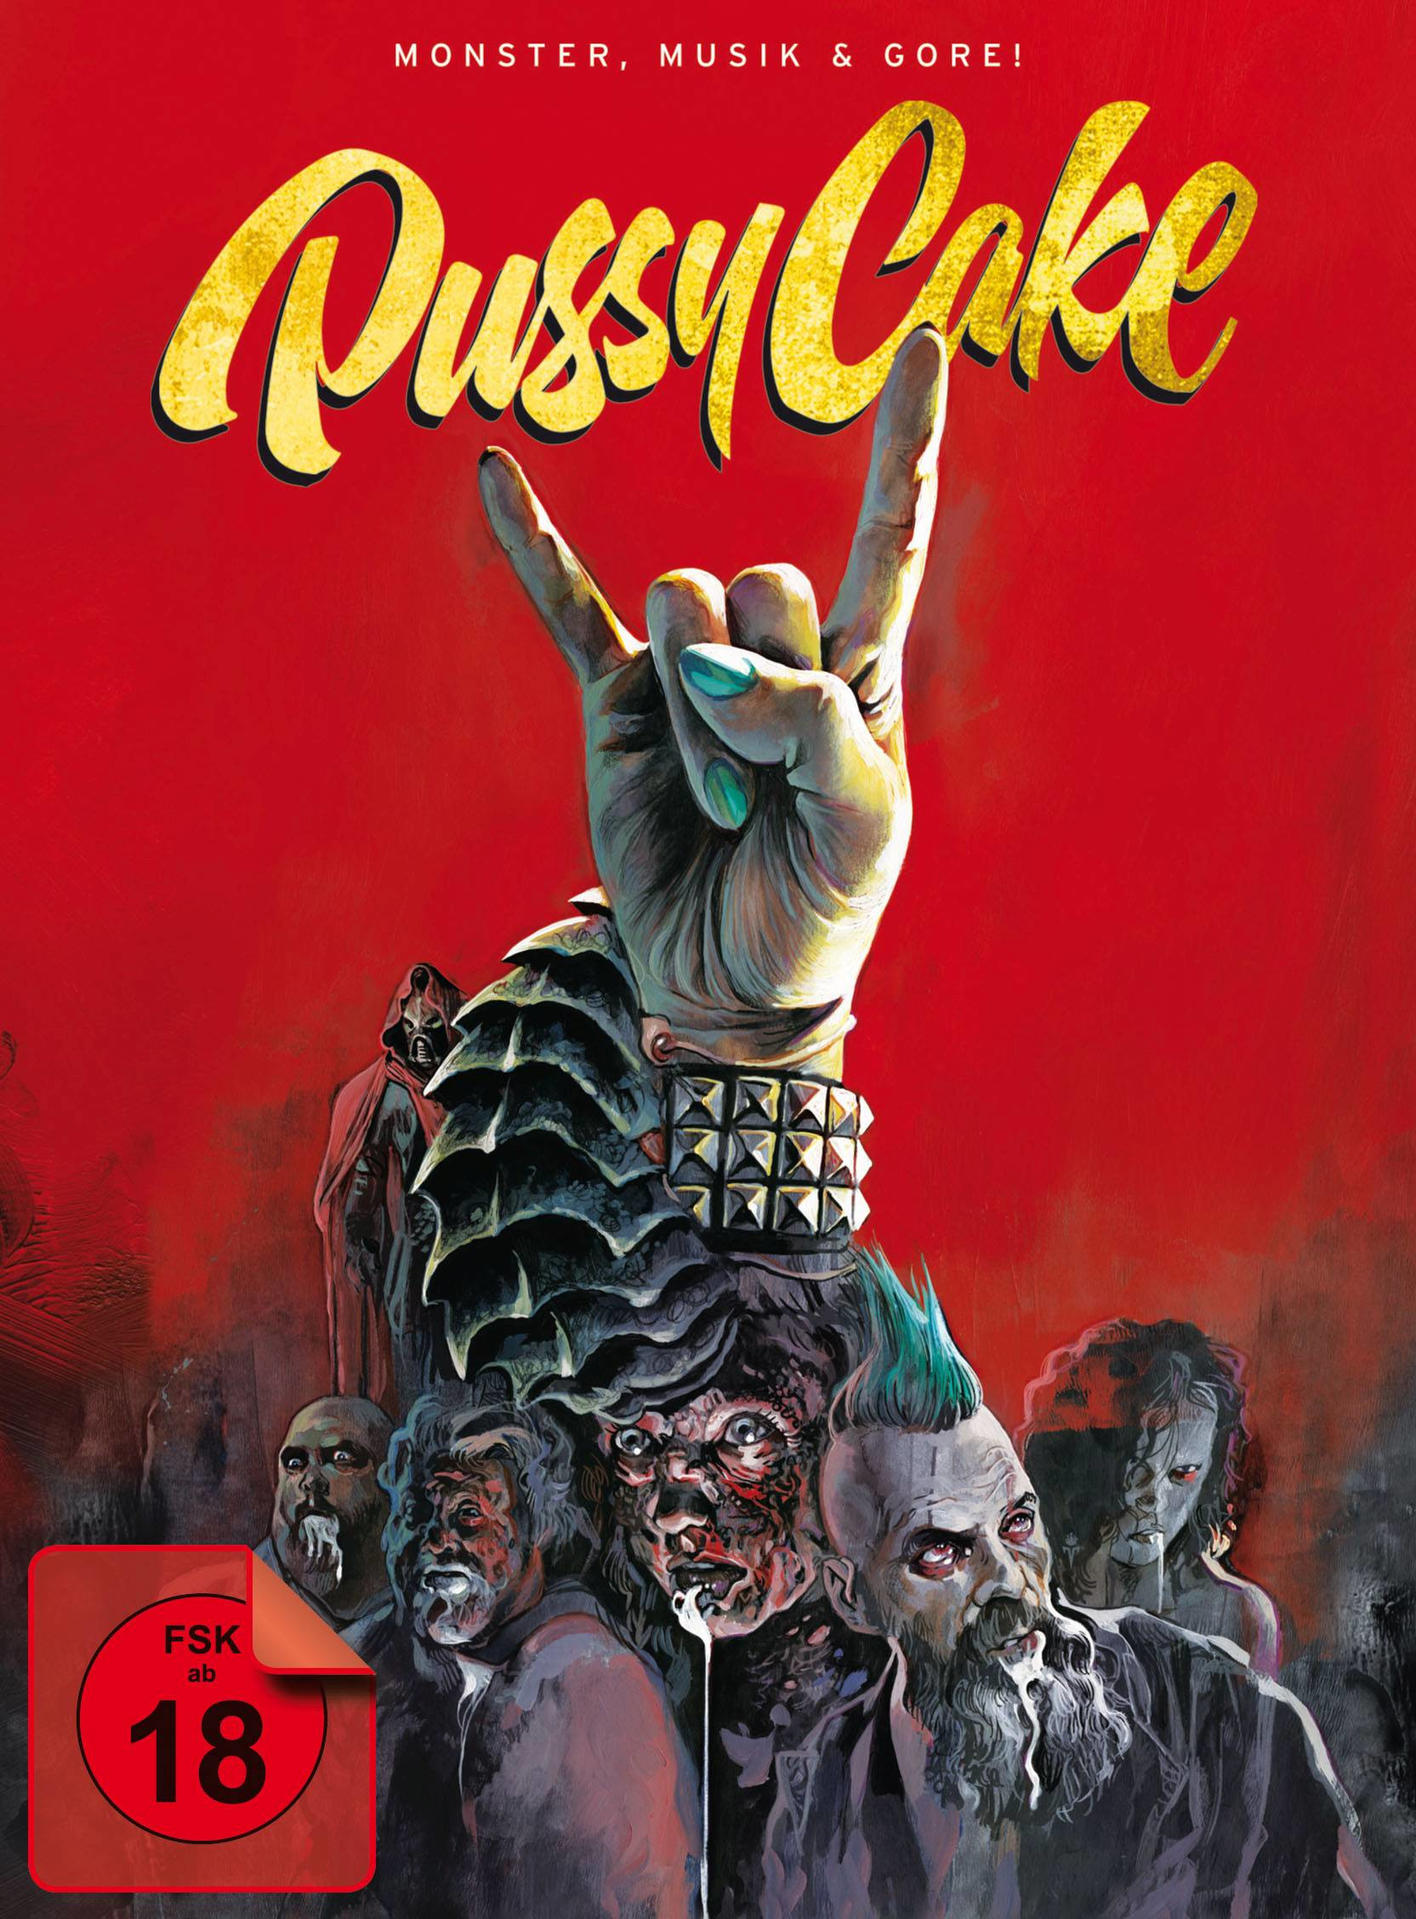 Blu-ray Gore! und + Pussycake-Monster,Musik DVD